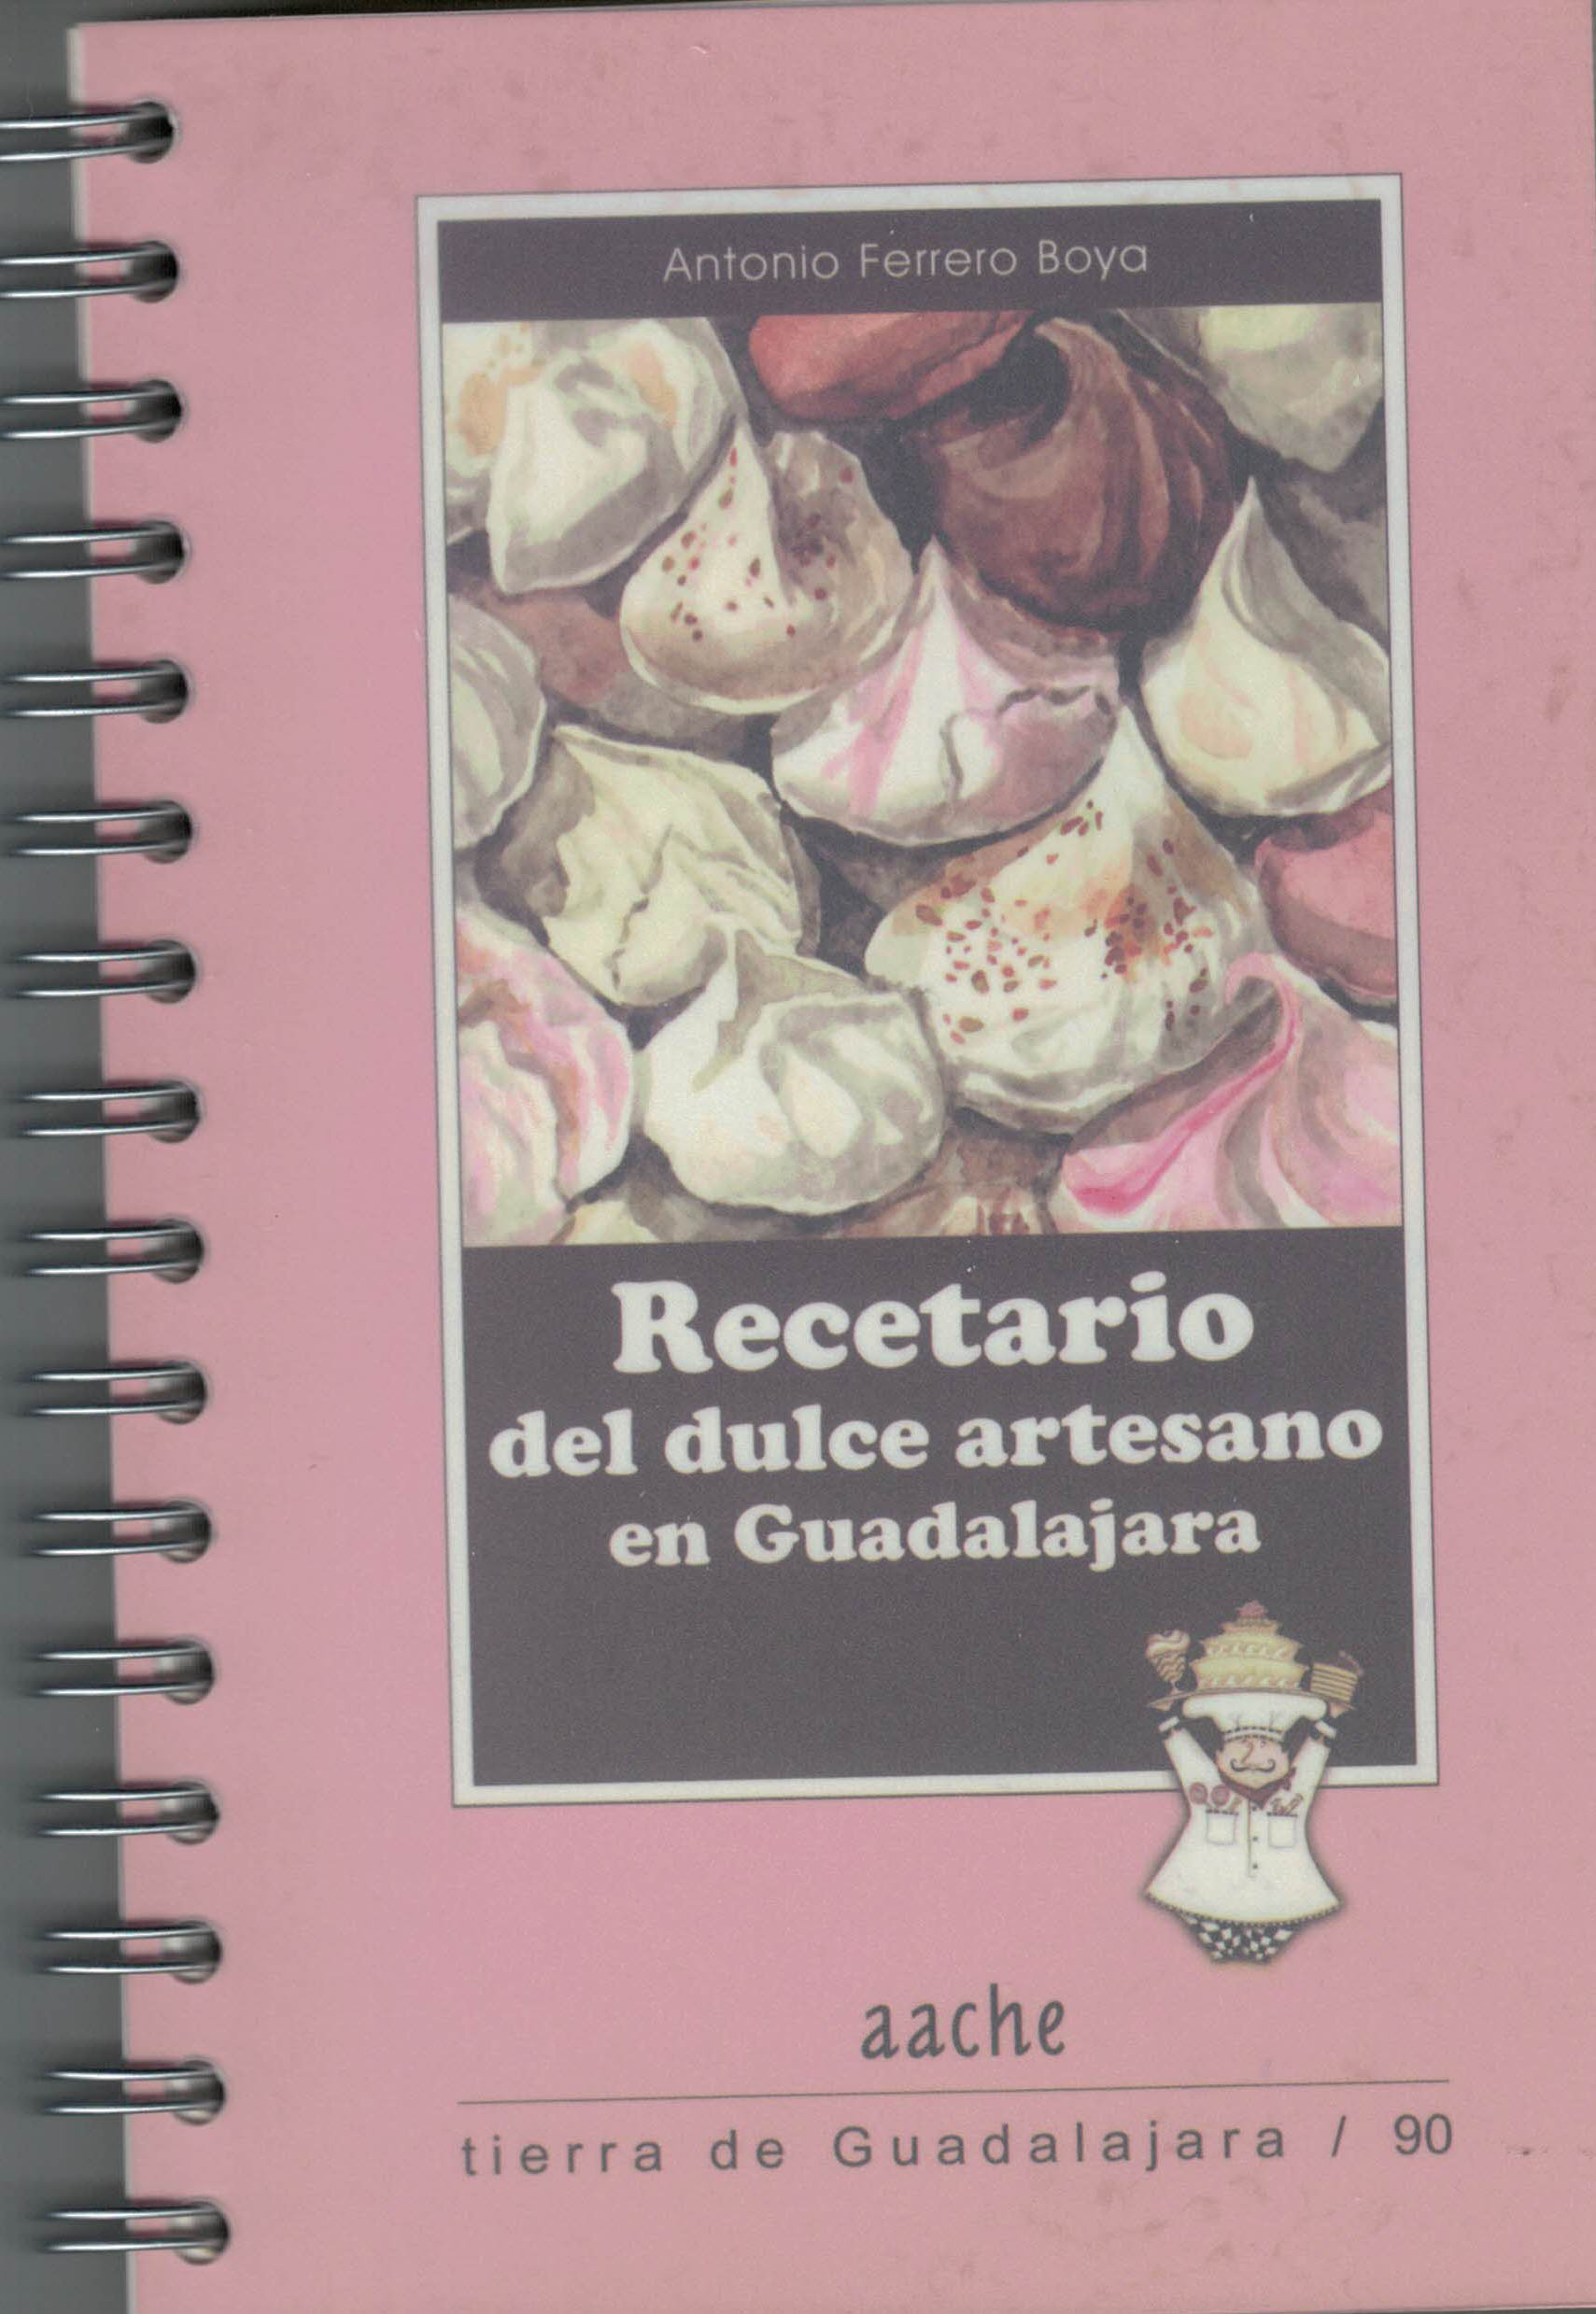 Recetario del dulce artesano en Guadalajara